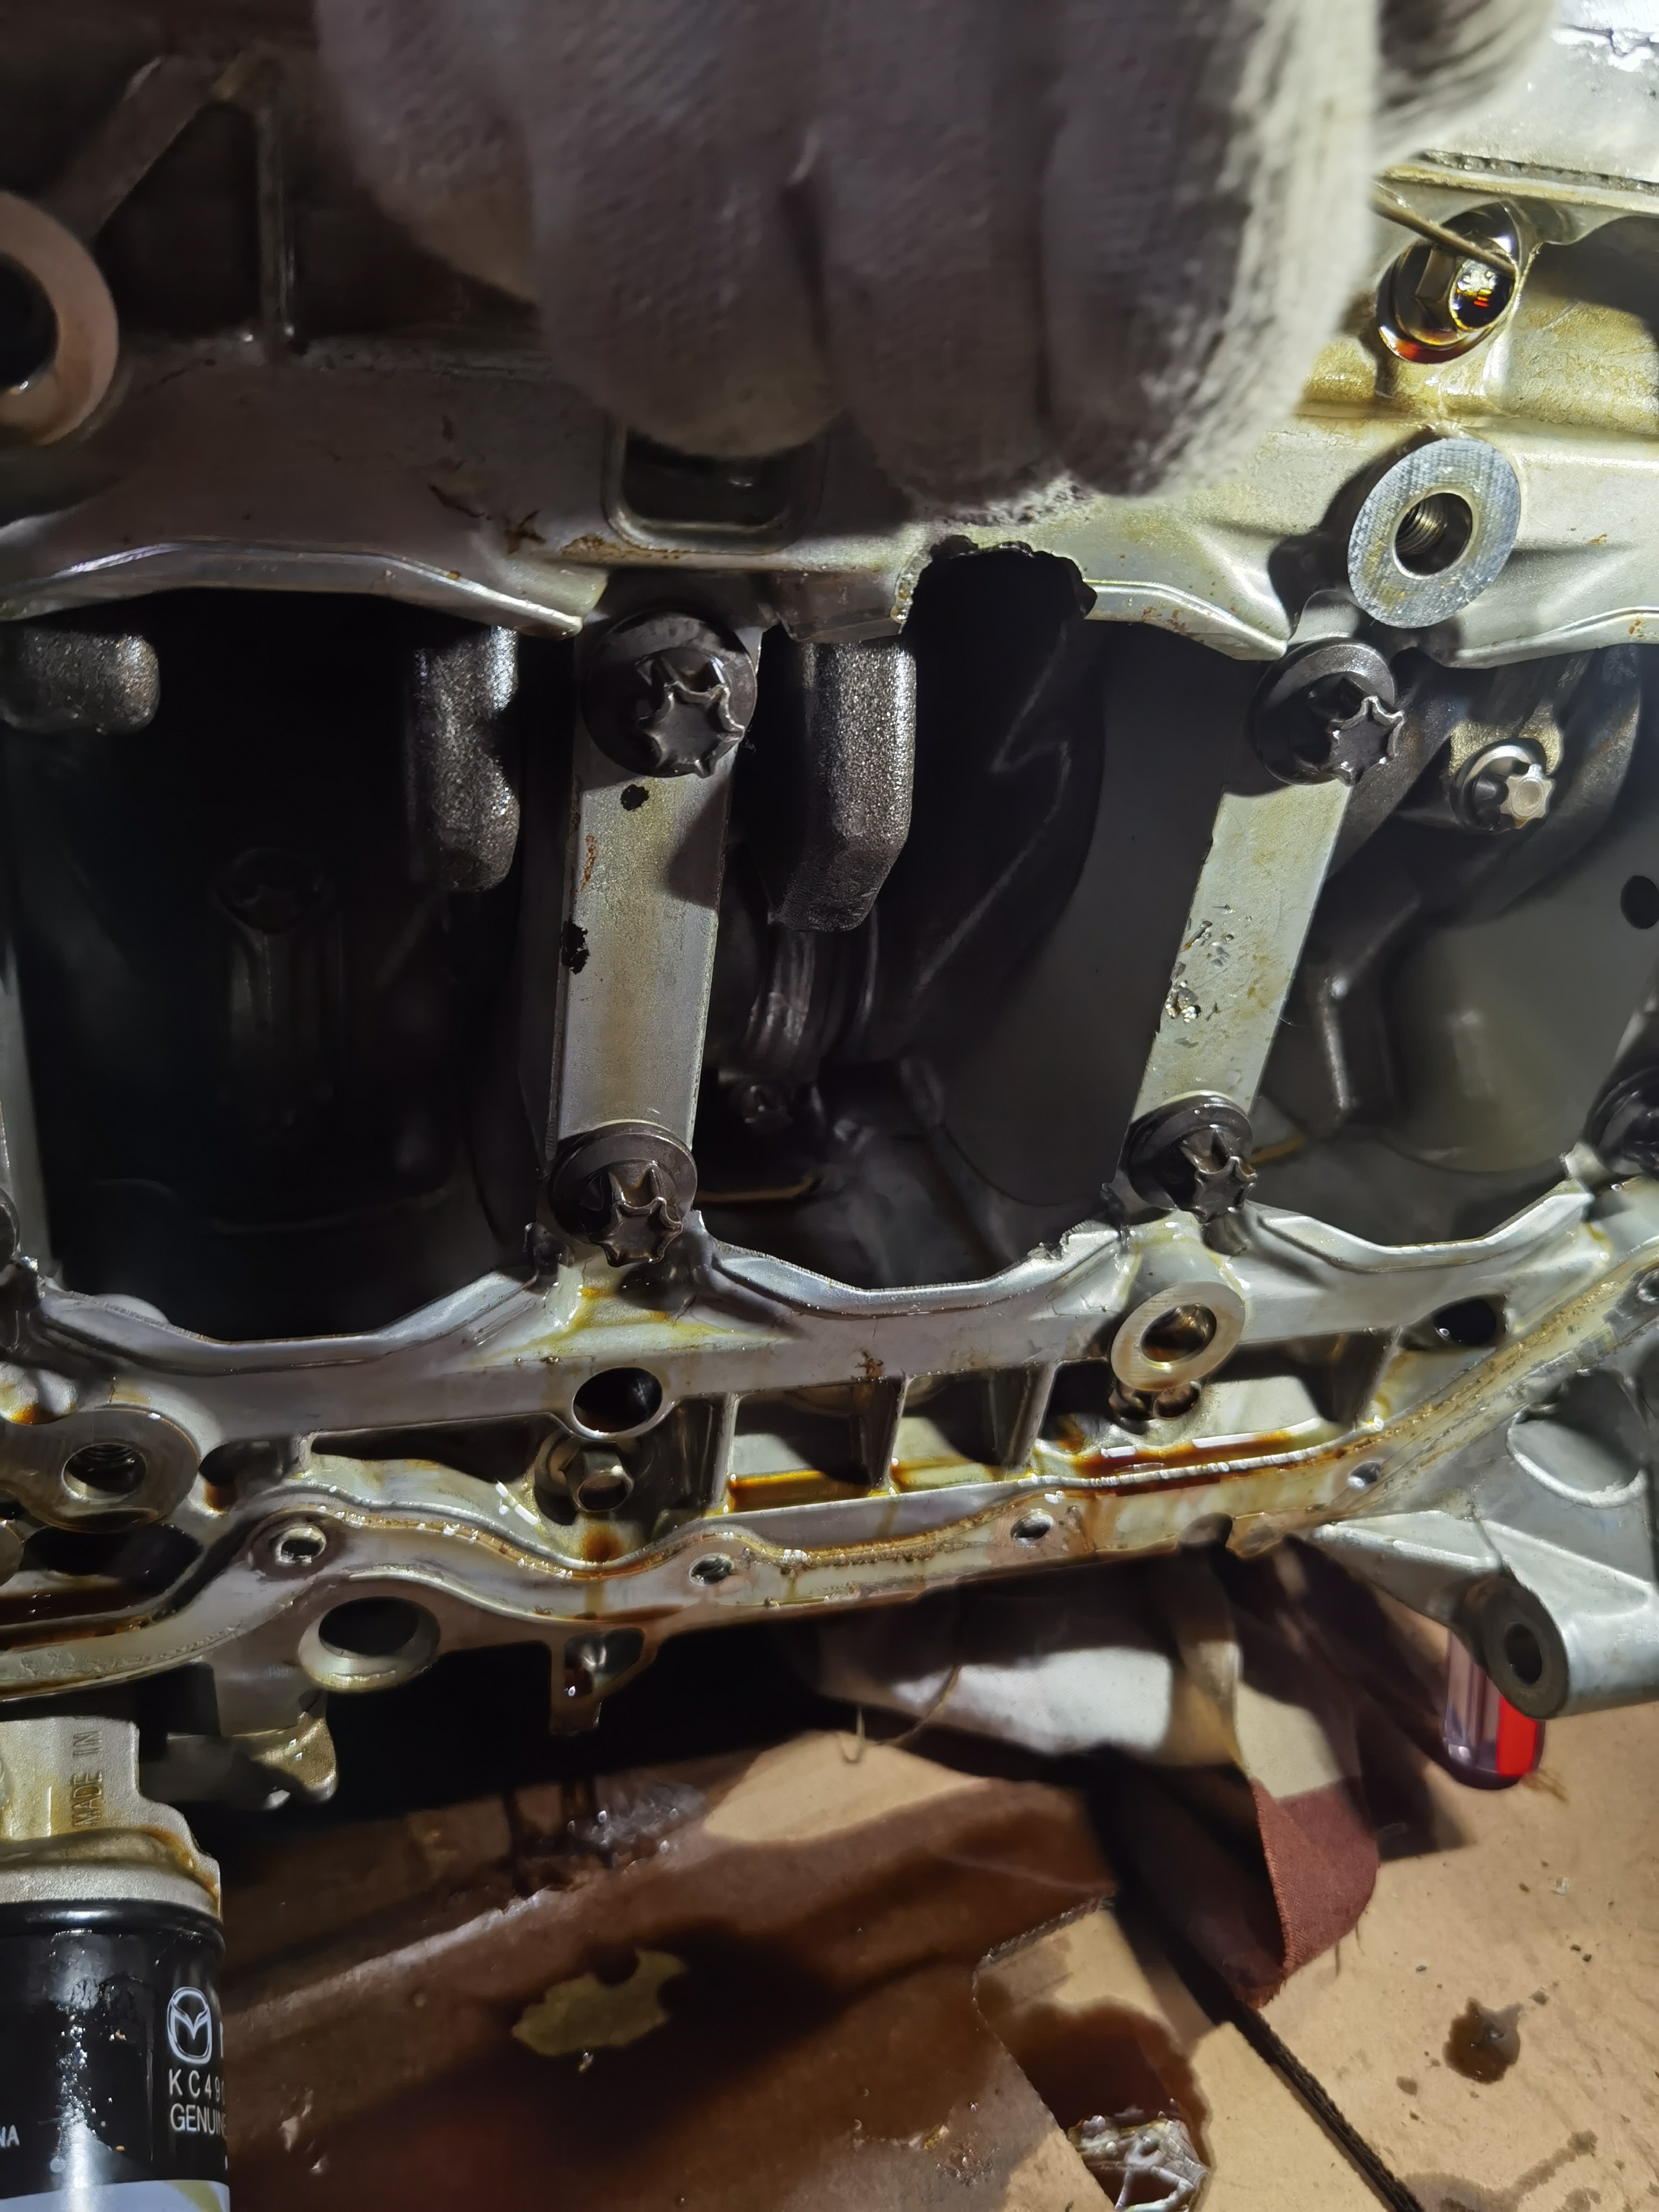 长安马自达CX-5车辆发动机螺丝断裂导致缸体破损出现漏油，厂家以过保为由不给予维修